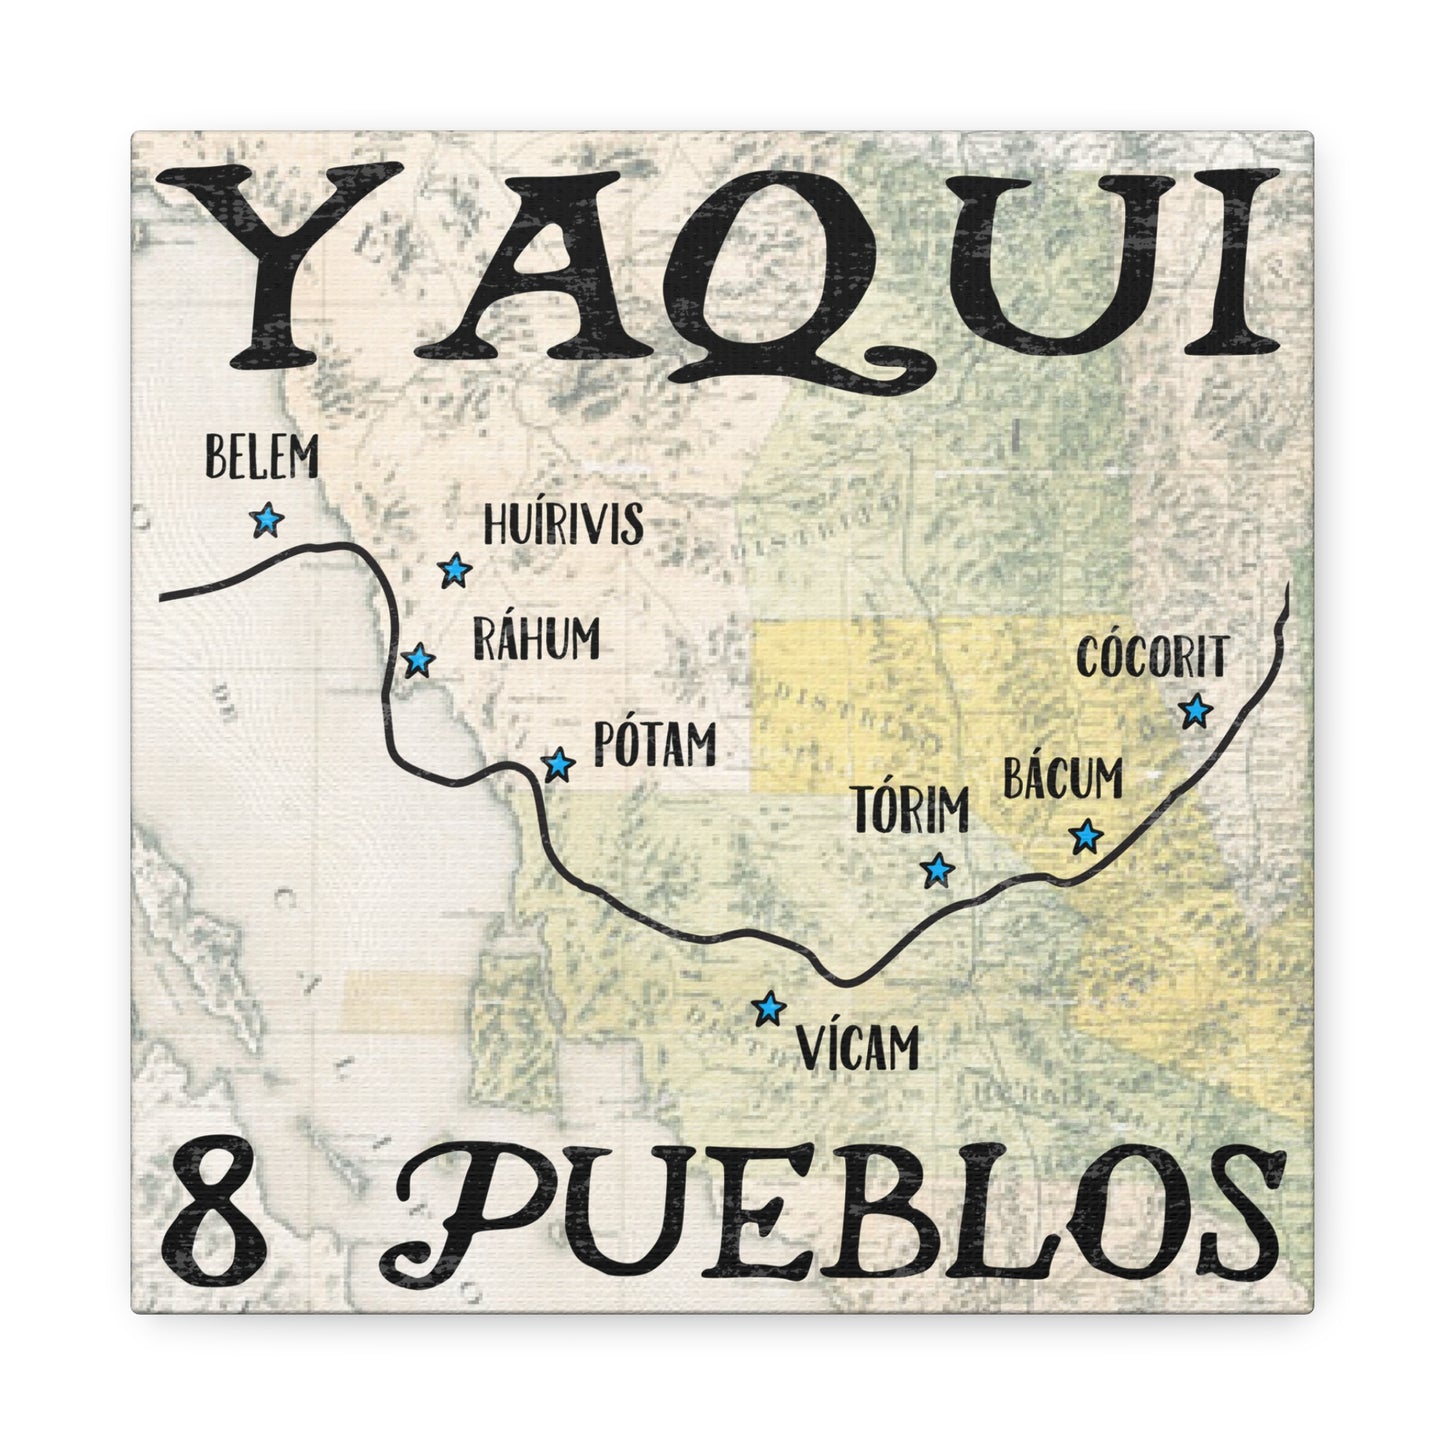 Yaqui Pueblos Canvas Gallery Wrap 10" X 10" Native American